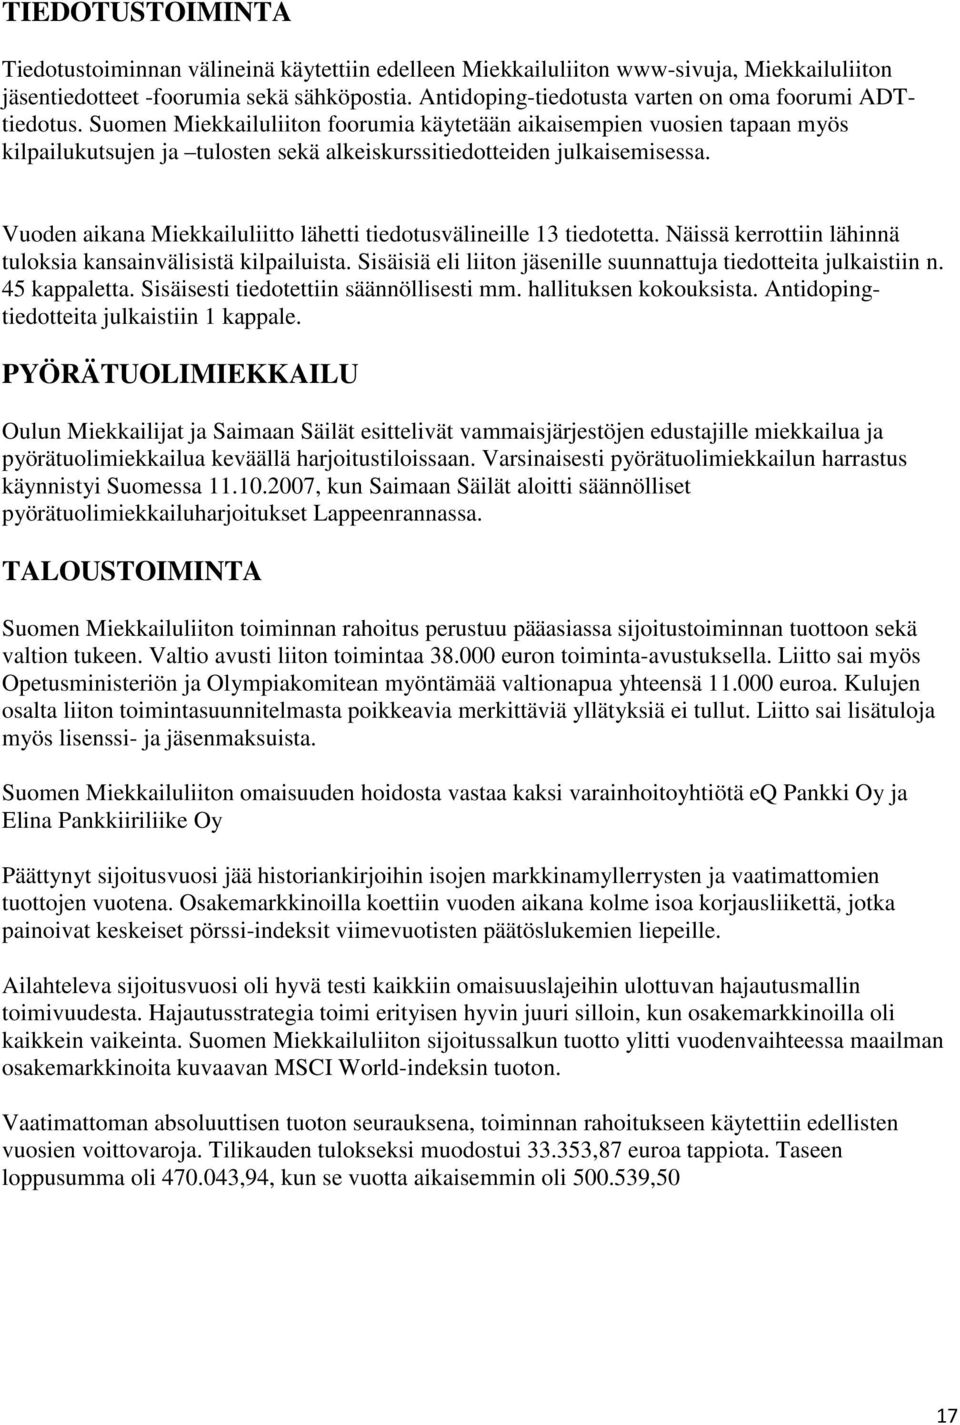 Suomen Miekkailuliiton foorumia käytetään aikaisempien vuosien tapaan myös kilpailukutsujen ja tulosten sekä alkeiskurssitiedotteiden julkaisemisessa.